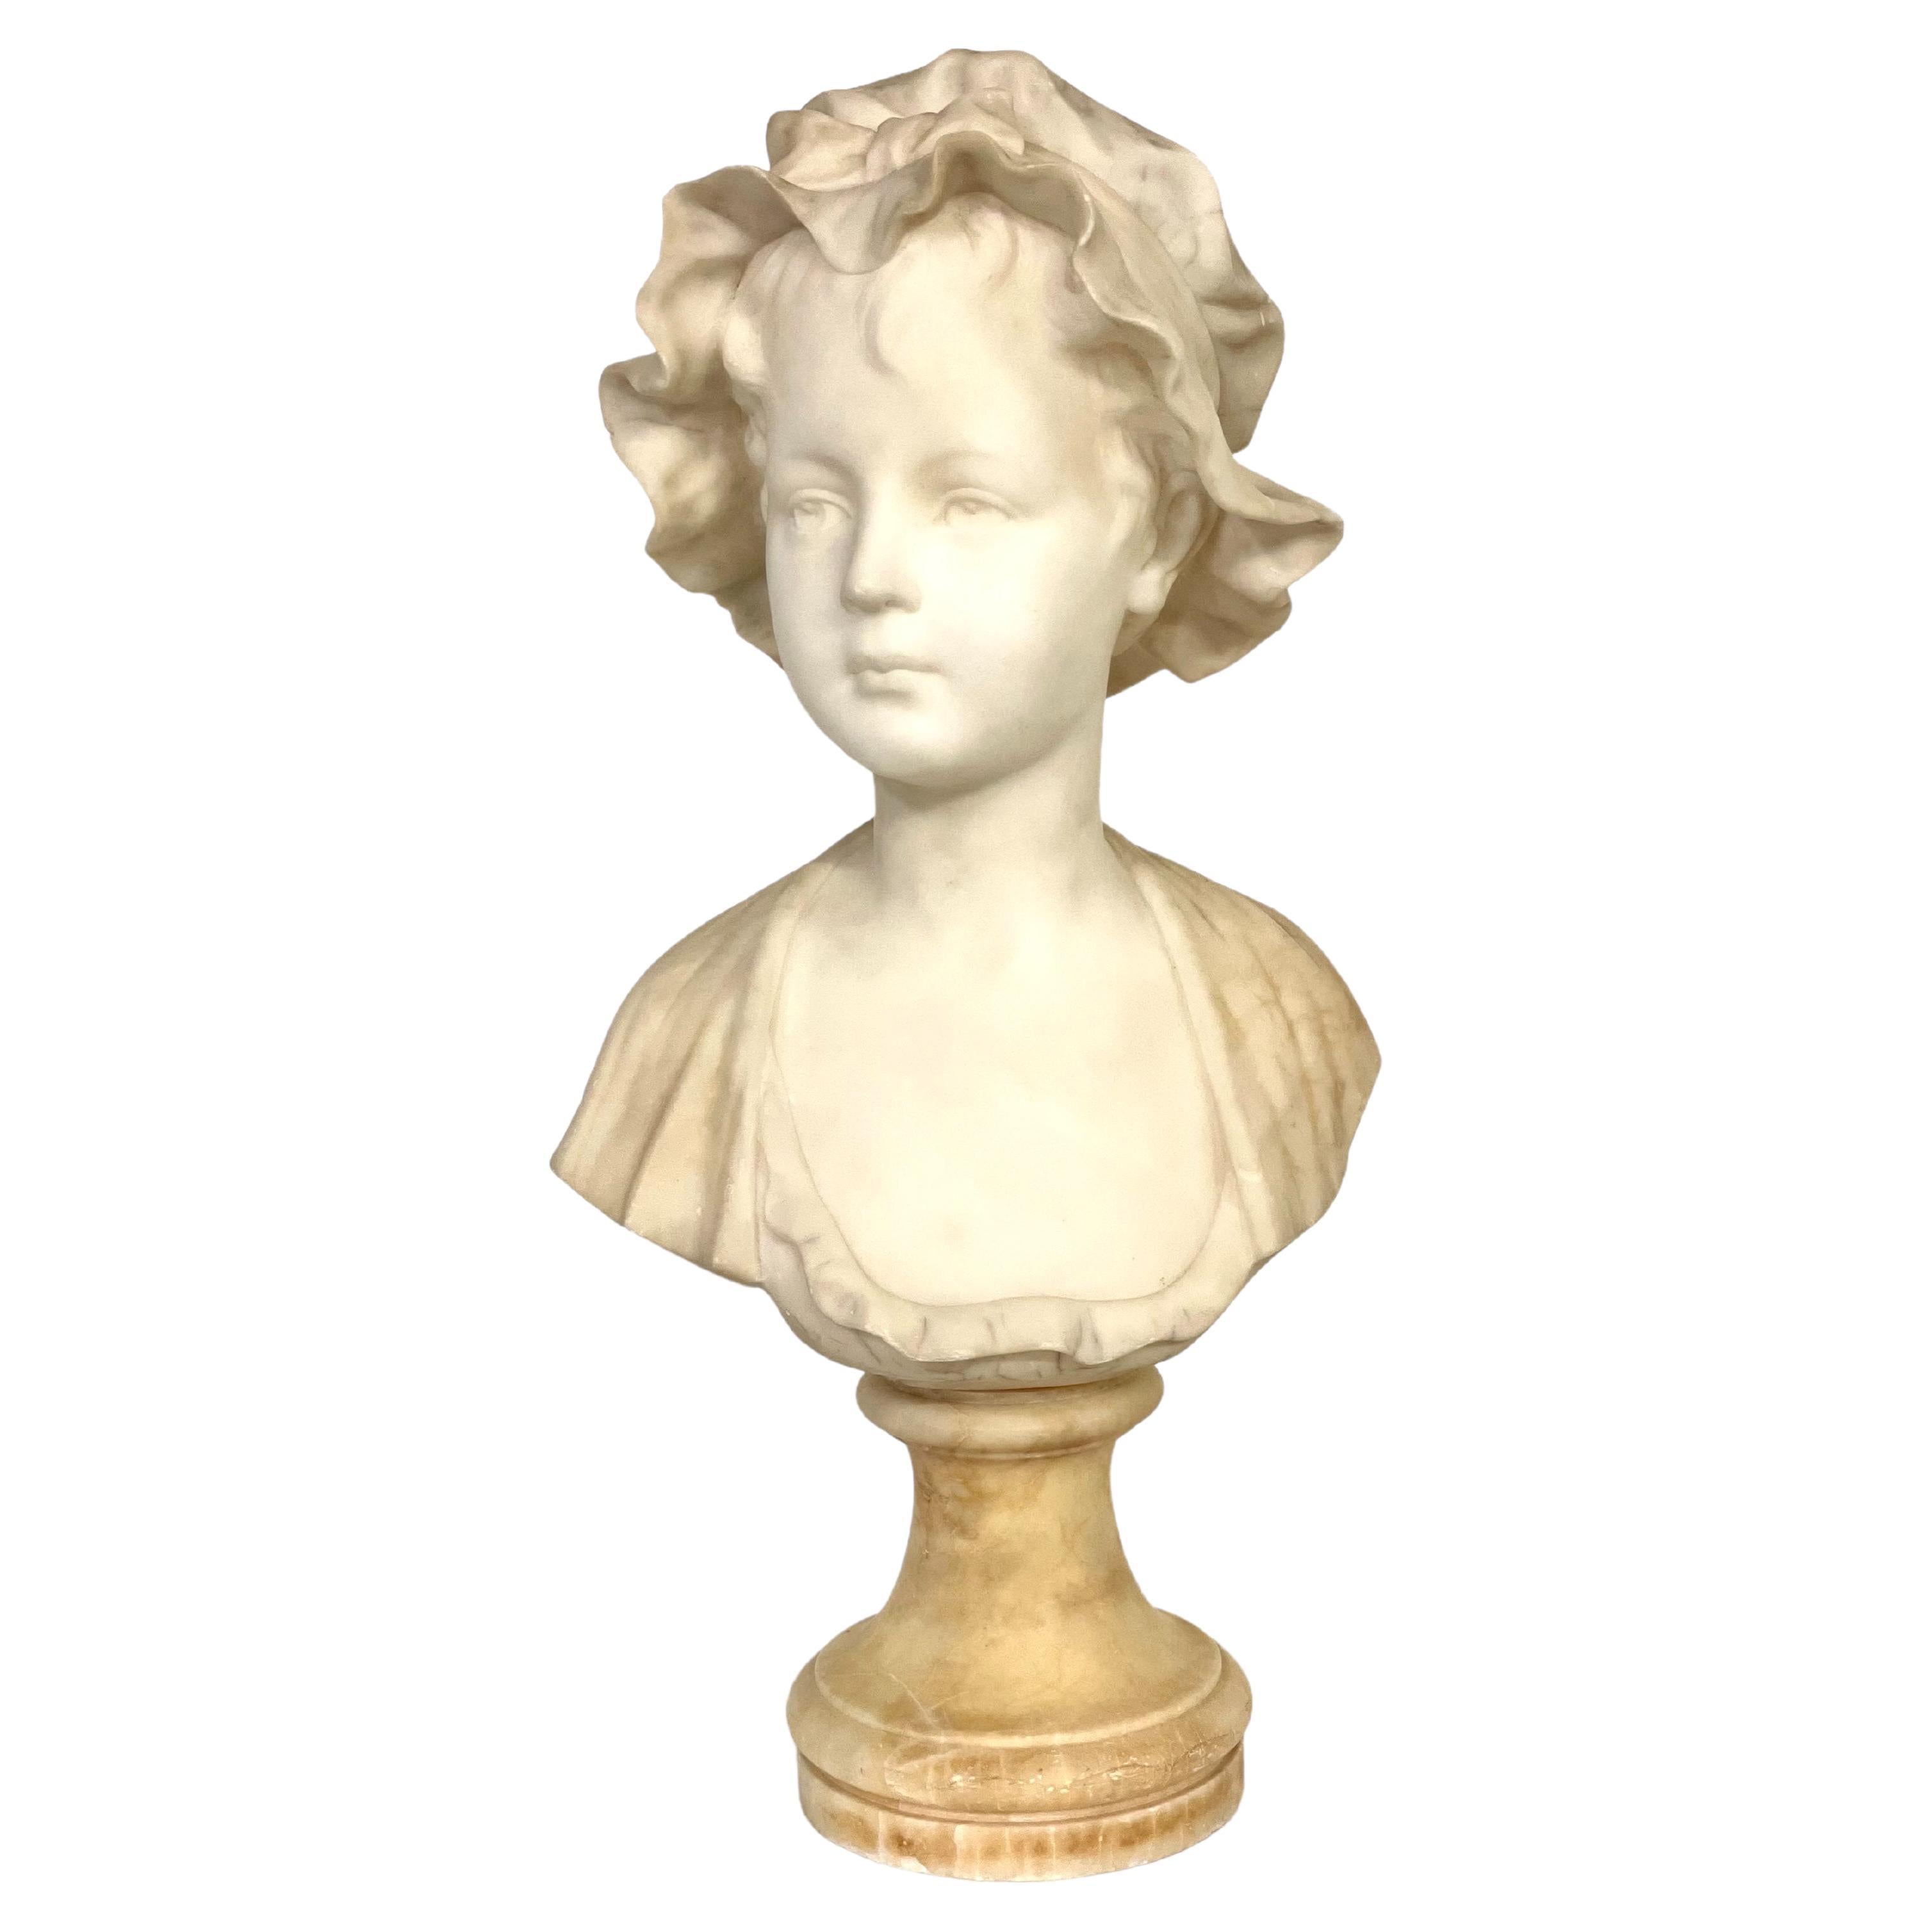 Sculpture française du 19ème siècle représentant une jeune fille avec un chapeau